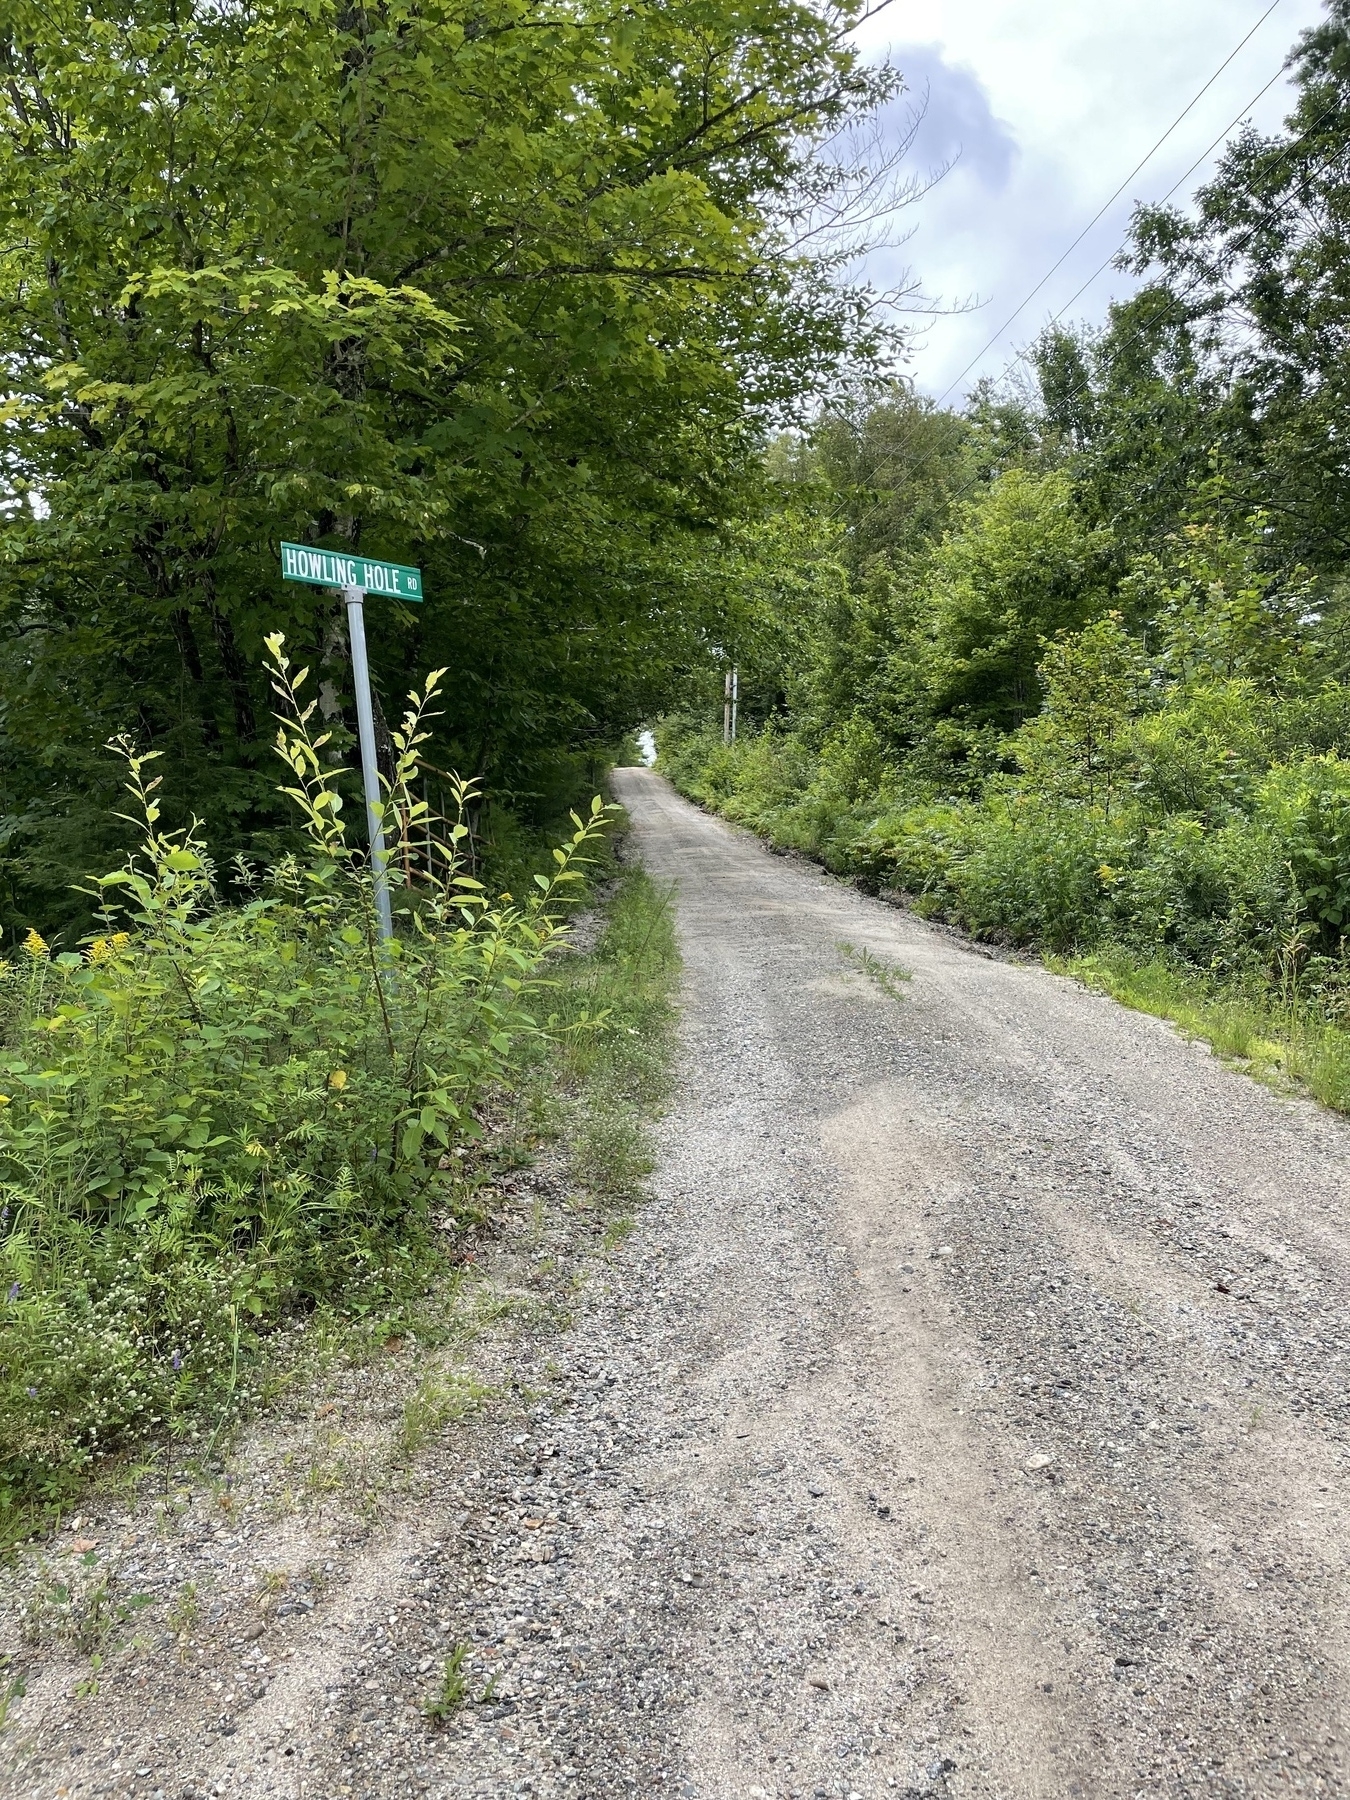 Street sign on gravel road